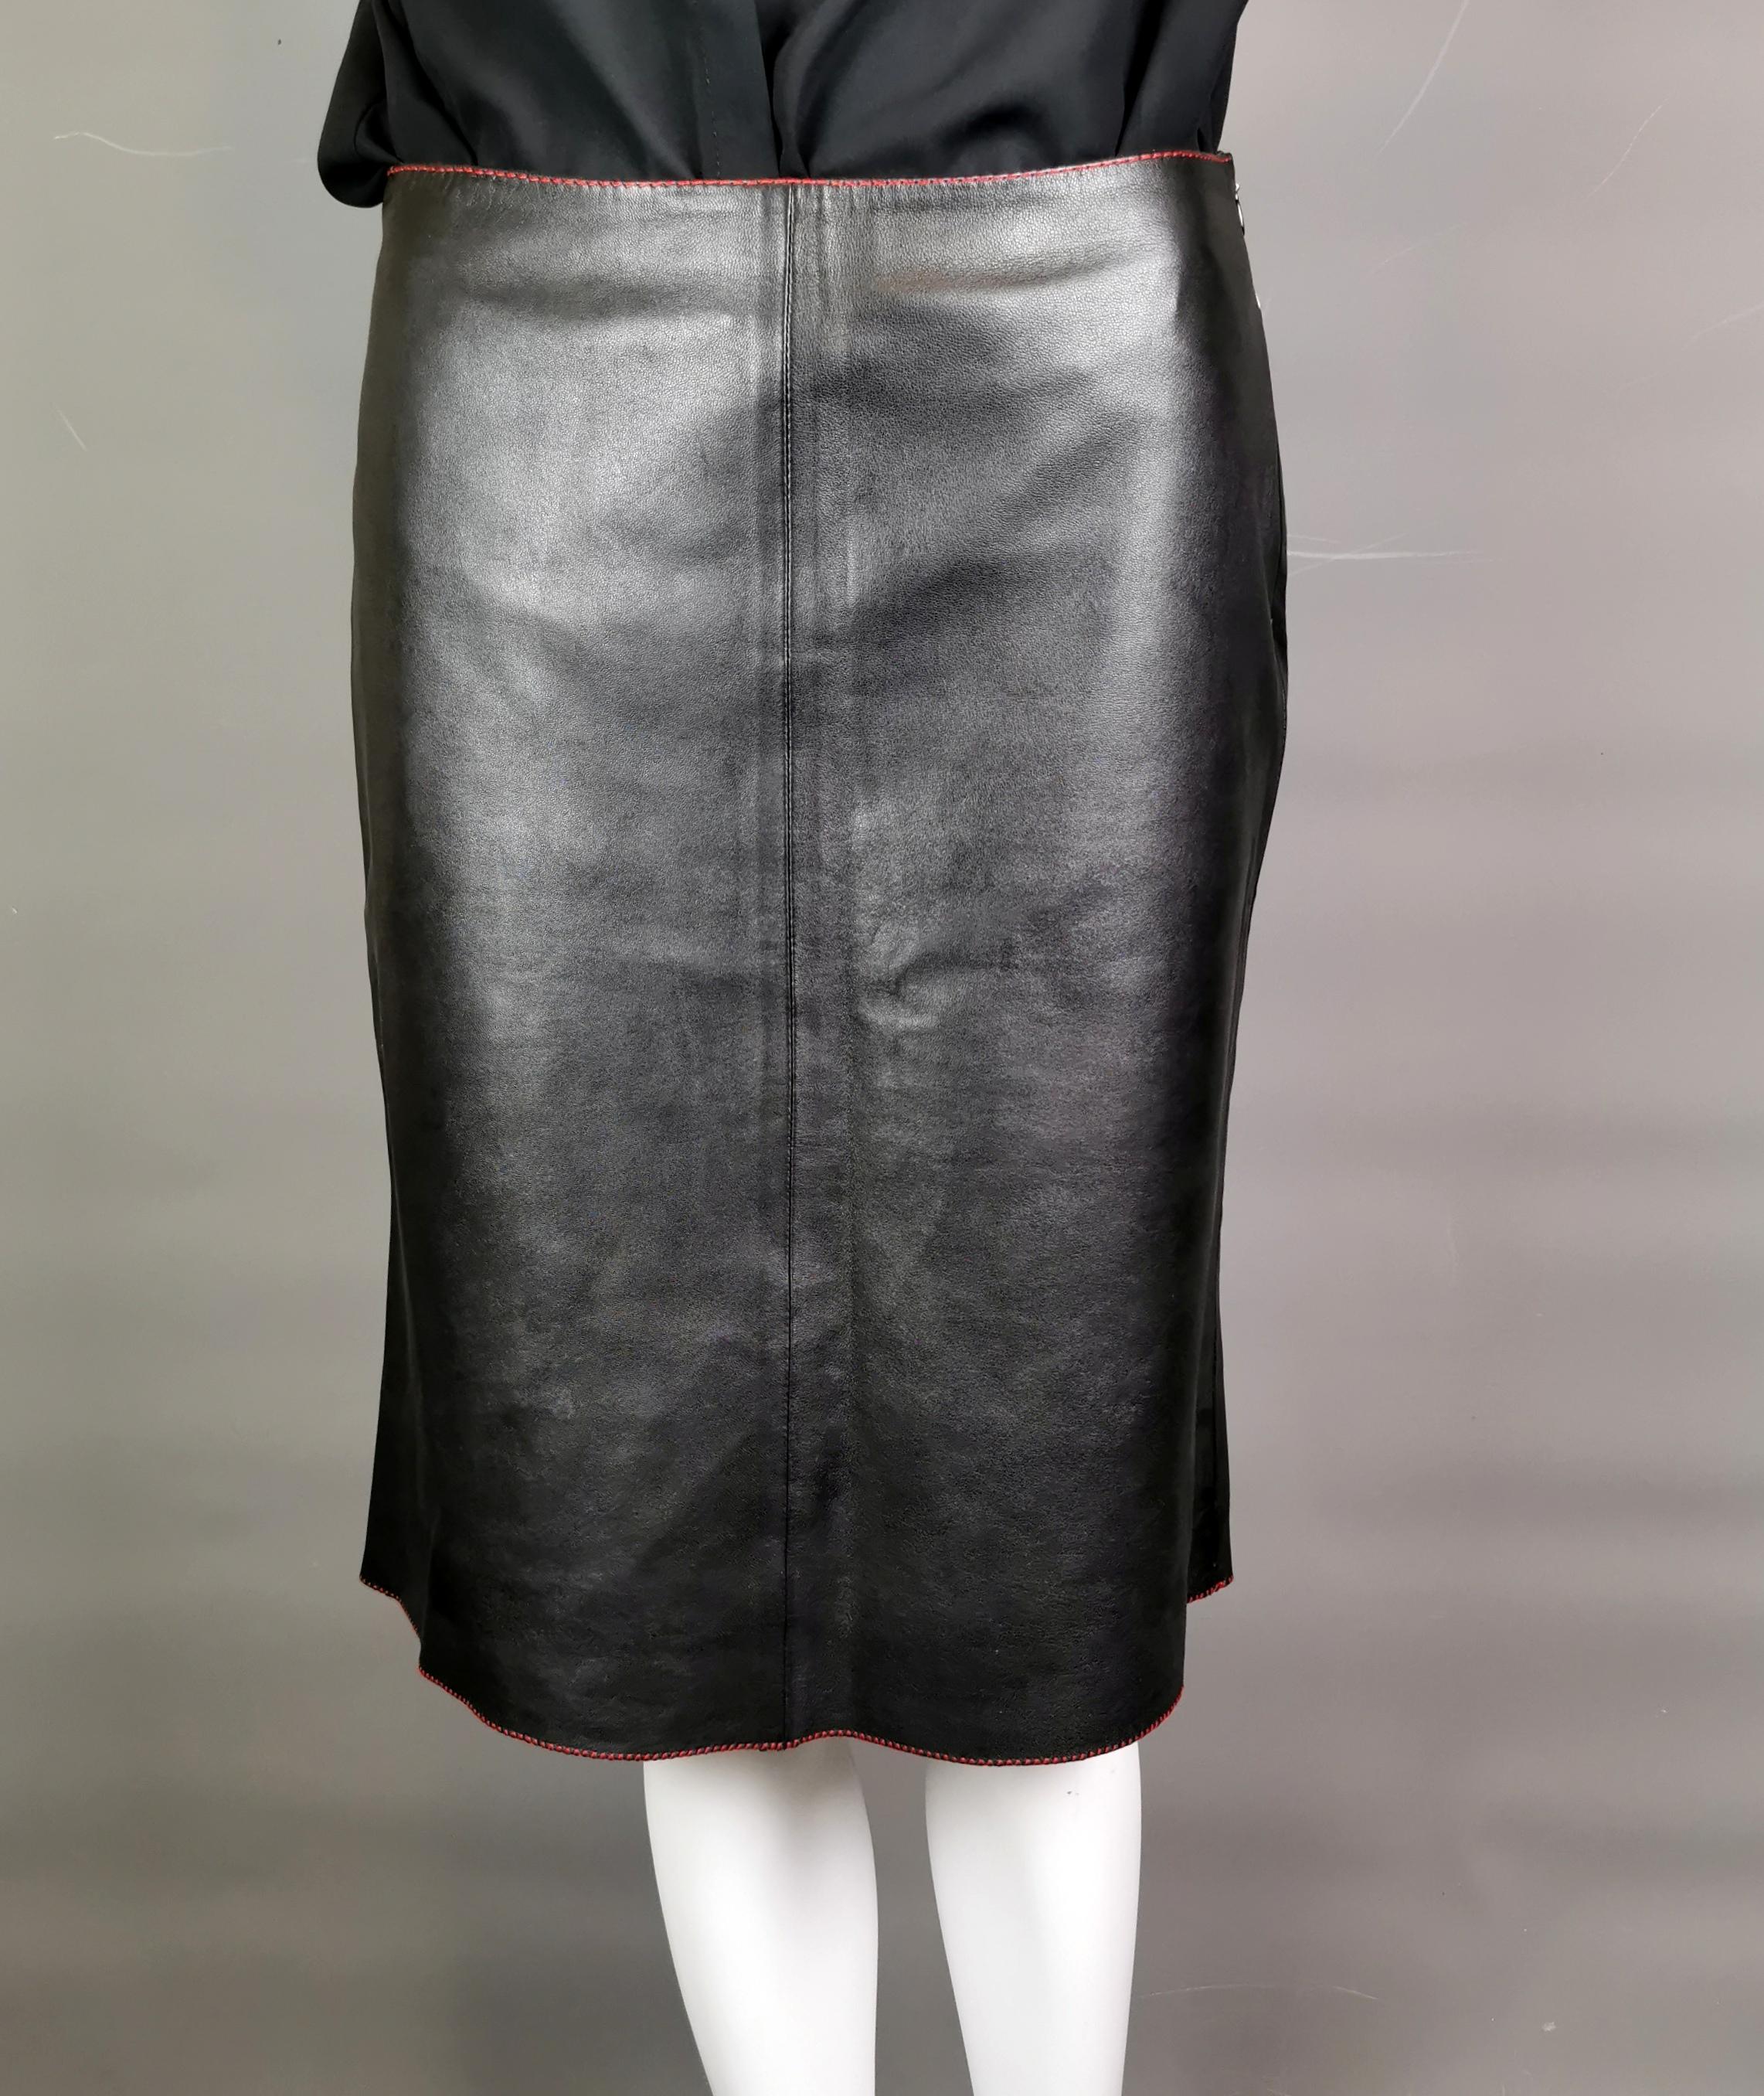 Une jupe en cuir de bonne qualité est un véritable basique de la garde-robe.

Cette jupe midi en cuir contrasté de Miu Miu est un excellent choix !

La jupe est droite et légèrement évasée dans le bas. Elle présente de jolies coutures rouges